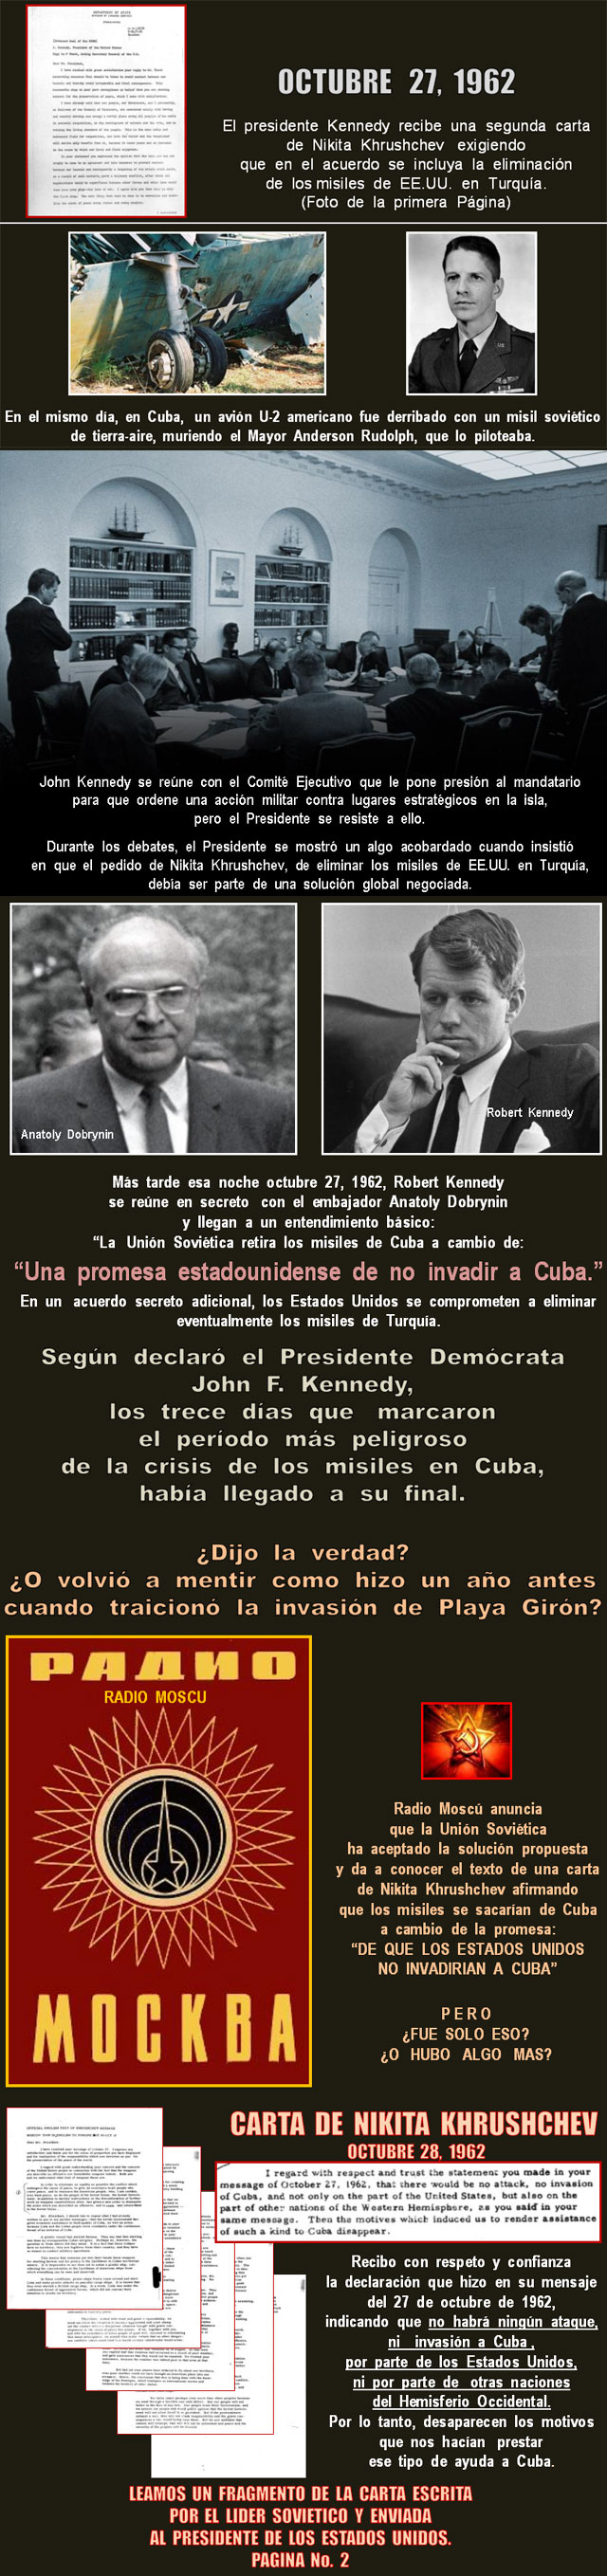 CUBA: "La Crisis de Los Misiles". Octubre de 1962, los 13 das ms peligrosos para la paz mundial. Hecho histrico [PPS en fotos] que debe ser estudiado. Por Carlos Luis Brito. cubademocraciayvida.org  web/folder.asp?folderID=136 